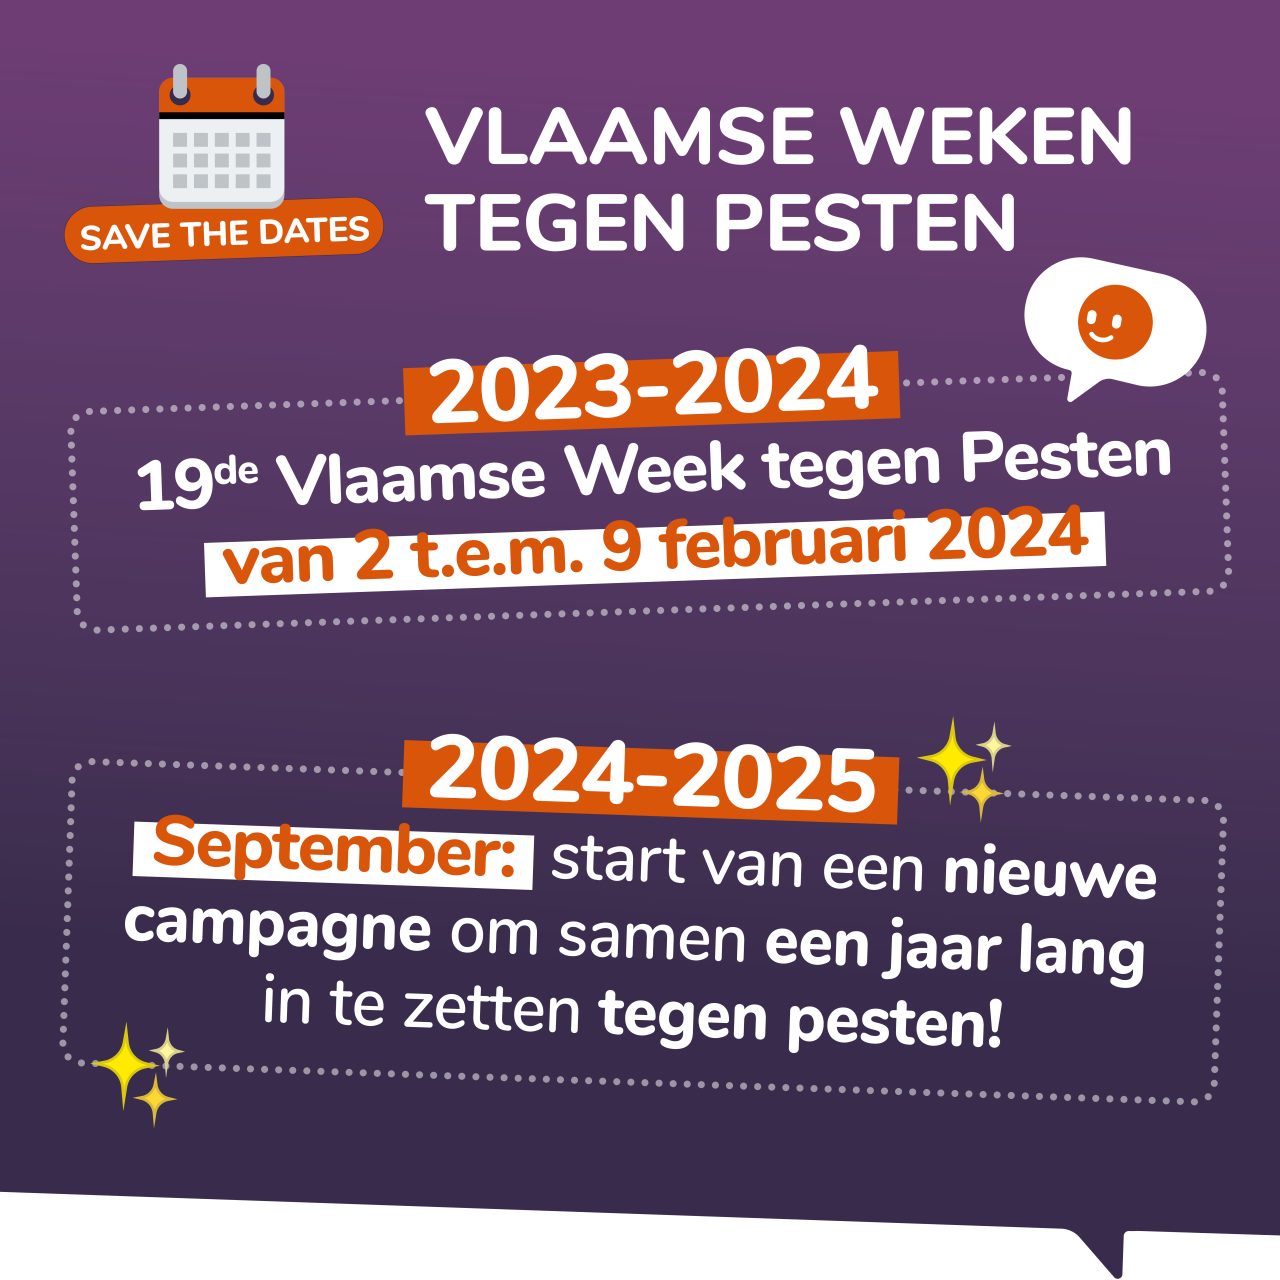 Reclame voor de 19e Vlaamse week tegen pesten van 2 tot en met 9 februari 2024